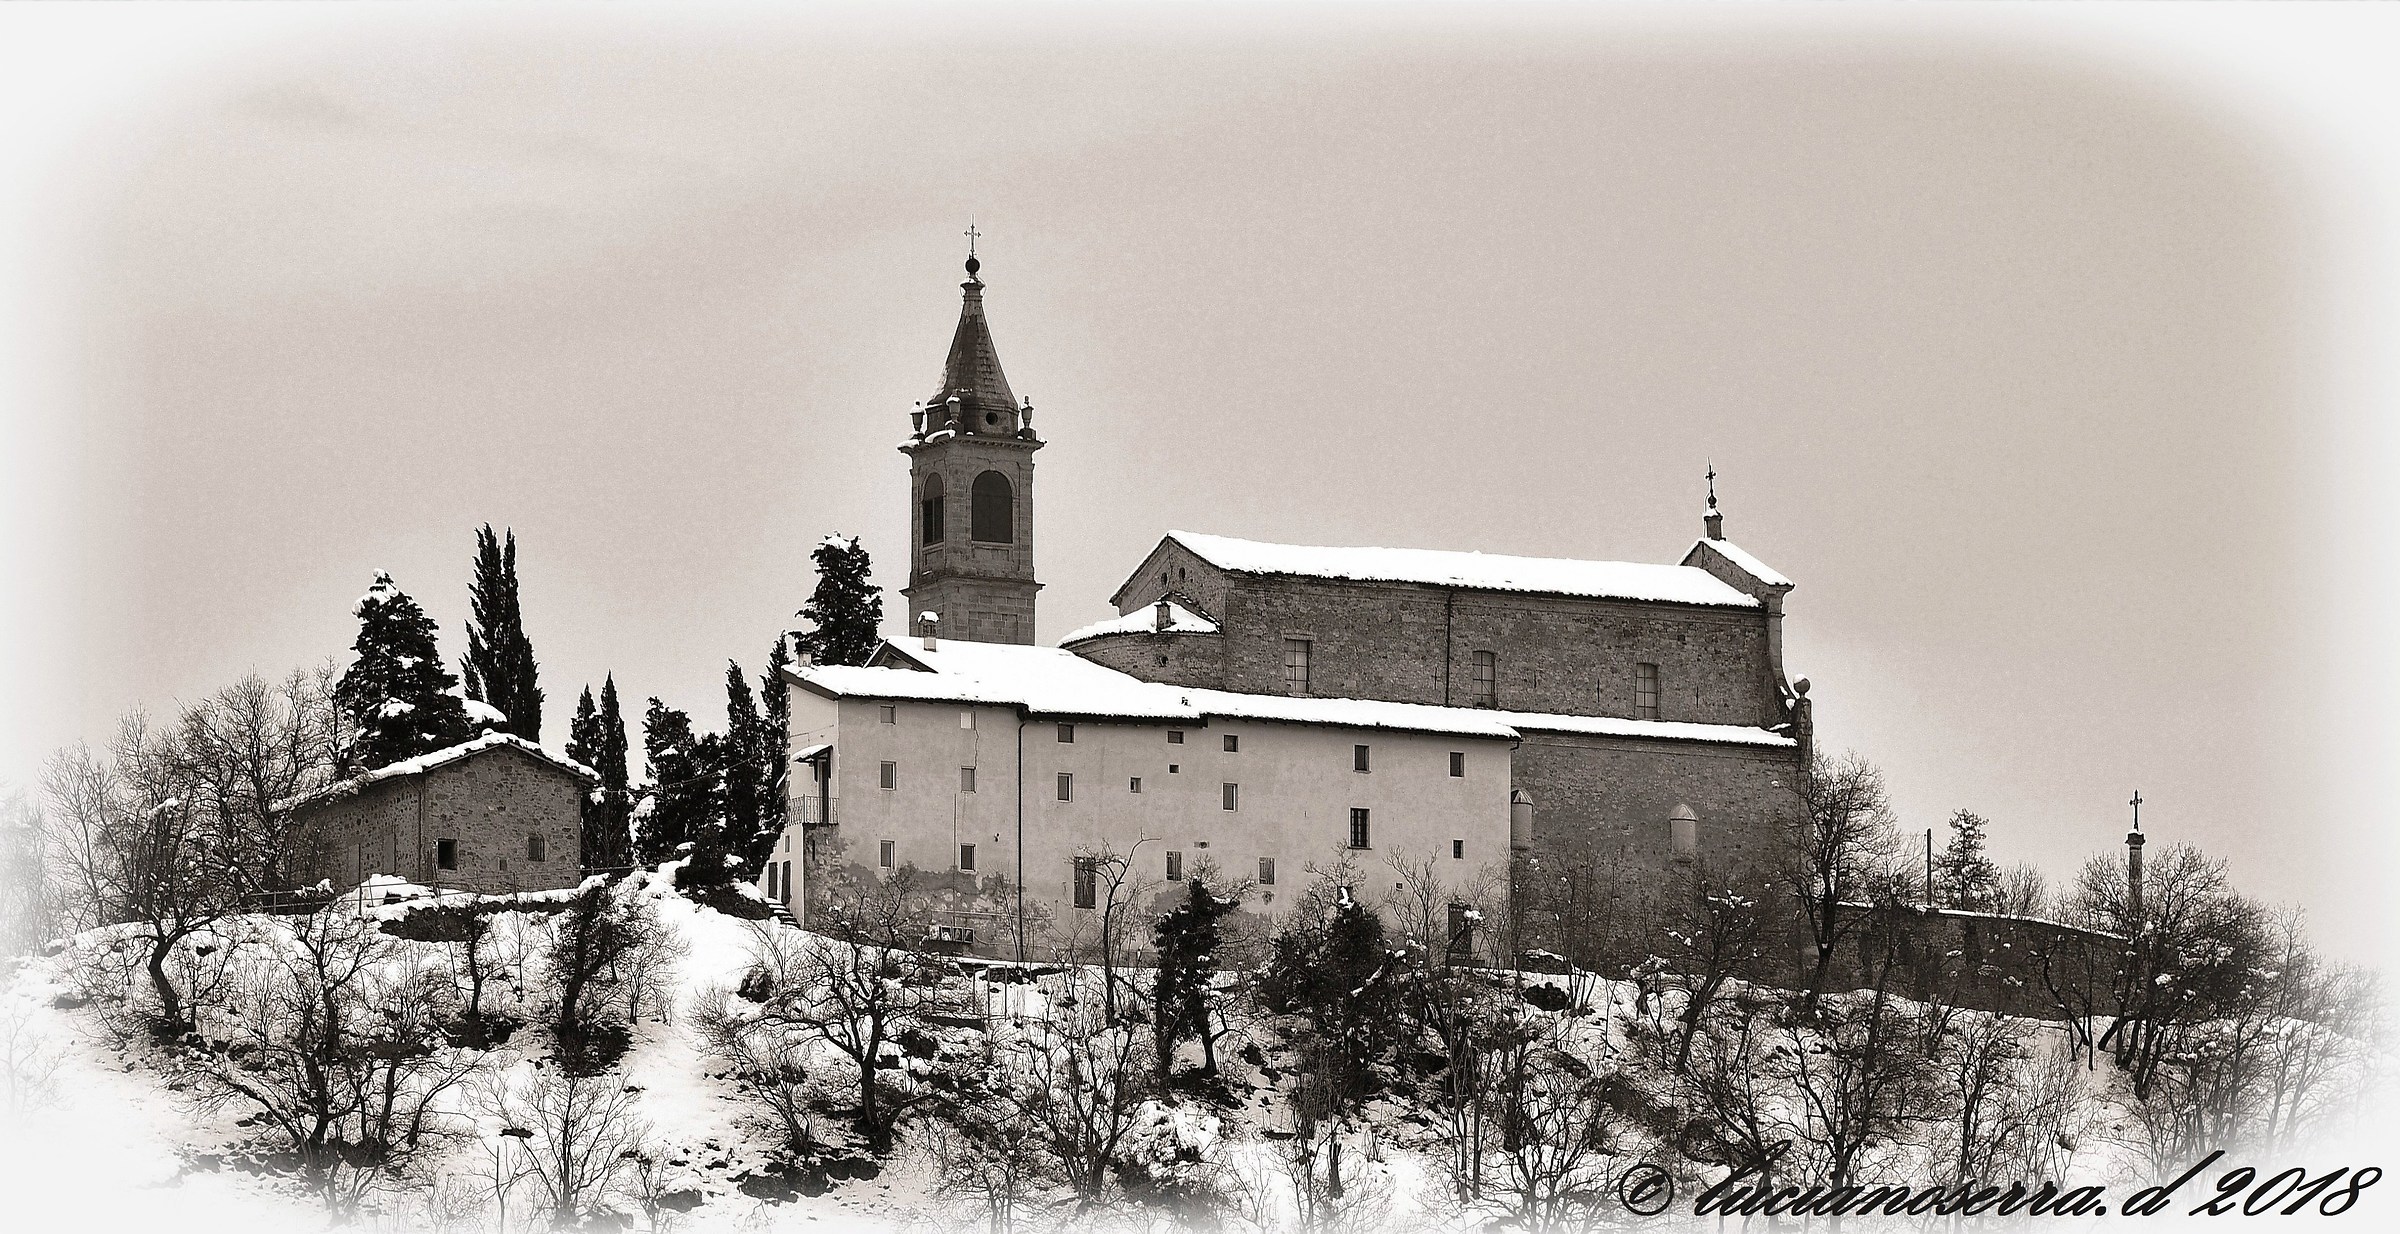 Parish of Sant'Alessandro di Bisano...